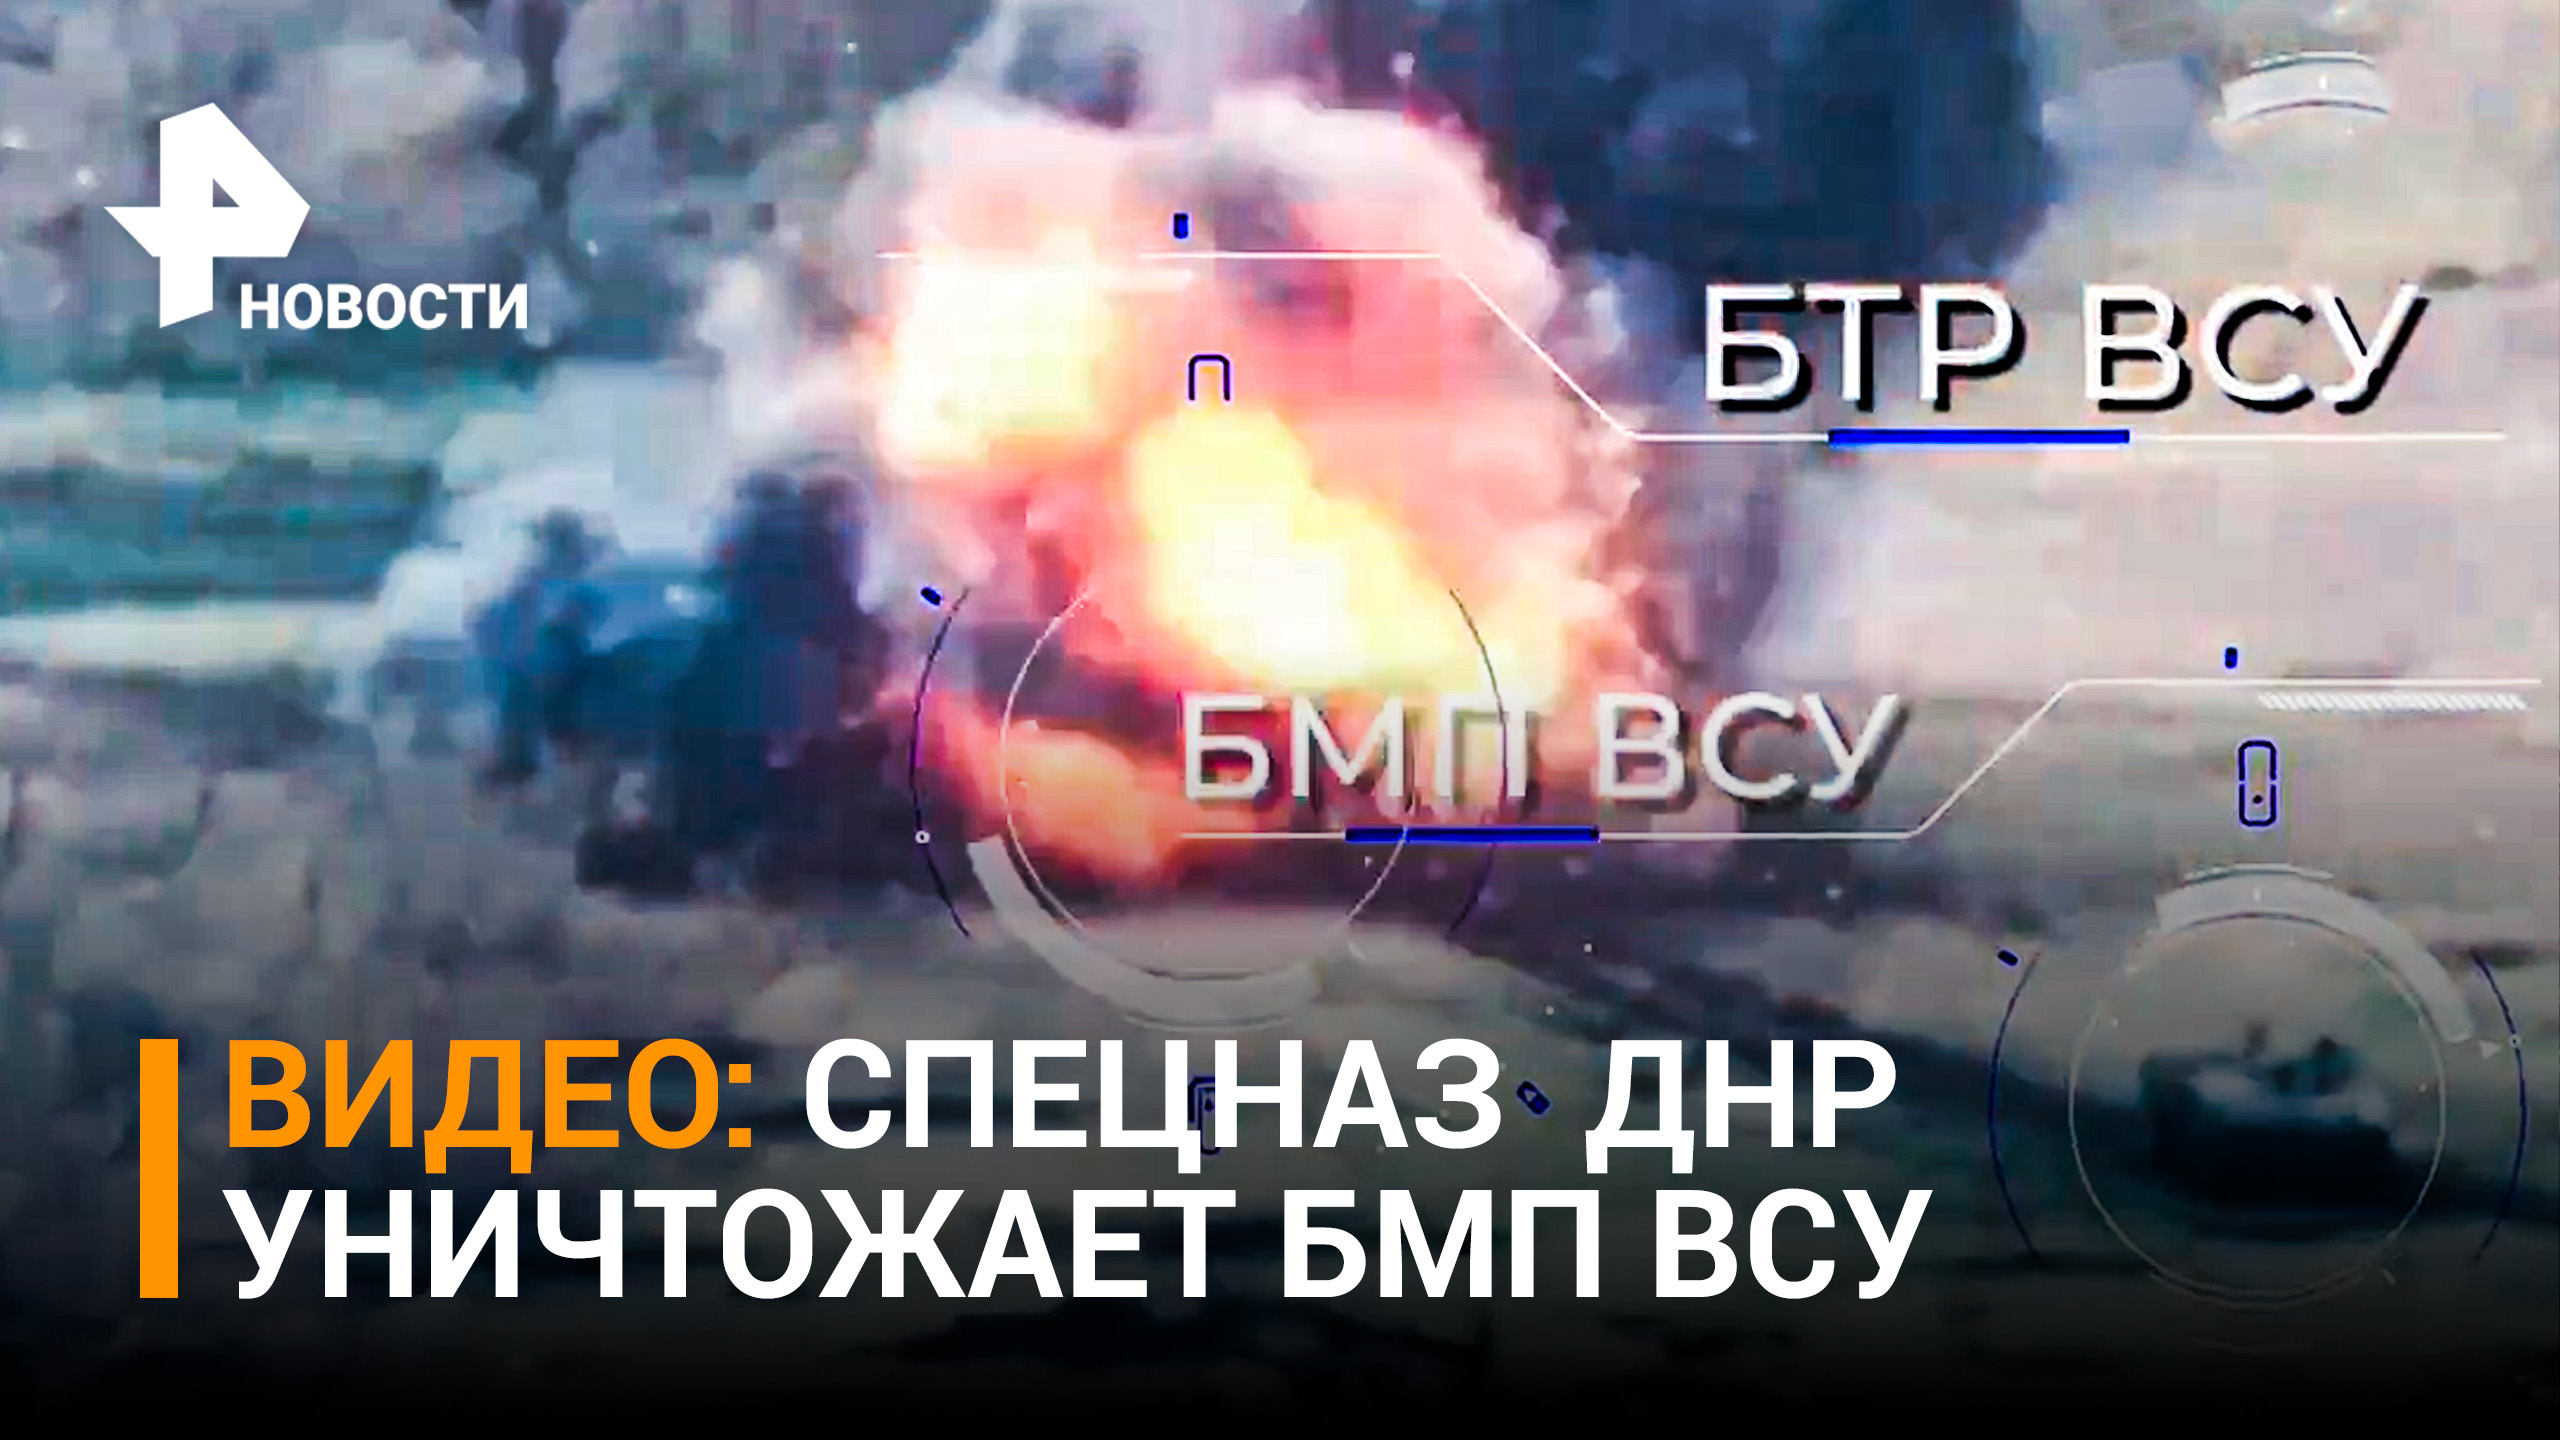 Кадры отражения контратаки ВСУ с помощью артиллерии и беспилотников. Видео Народной милиции ДНР